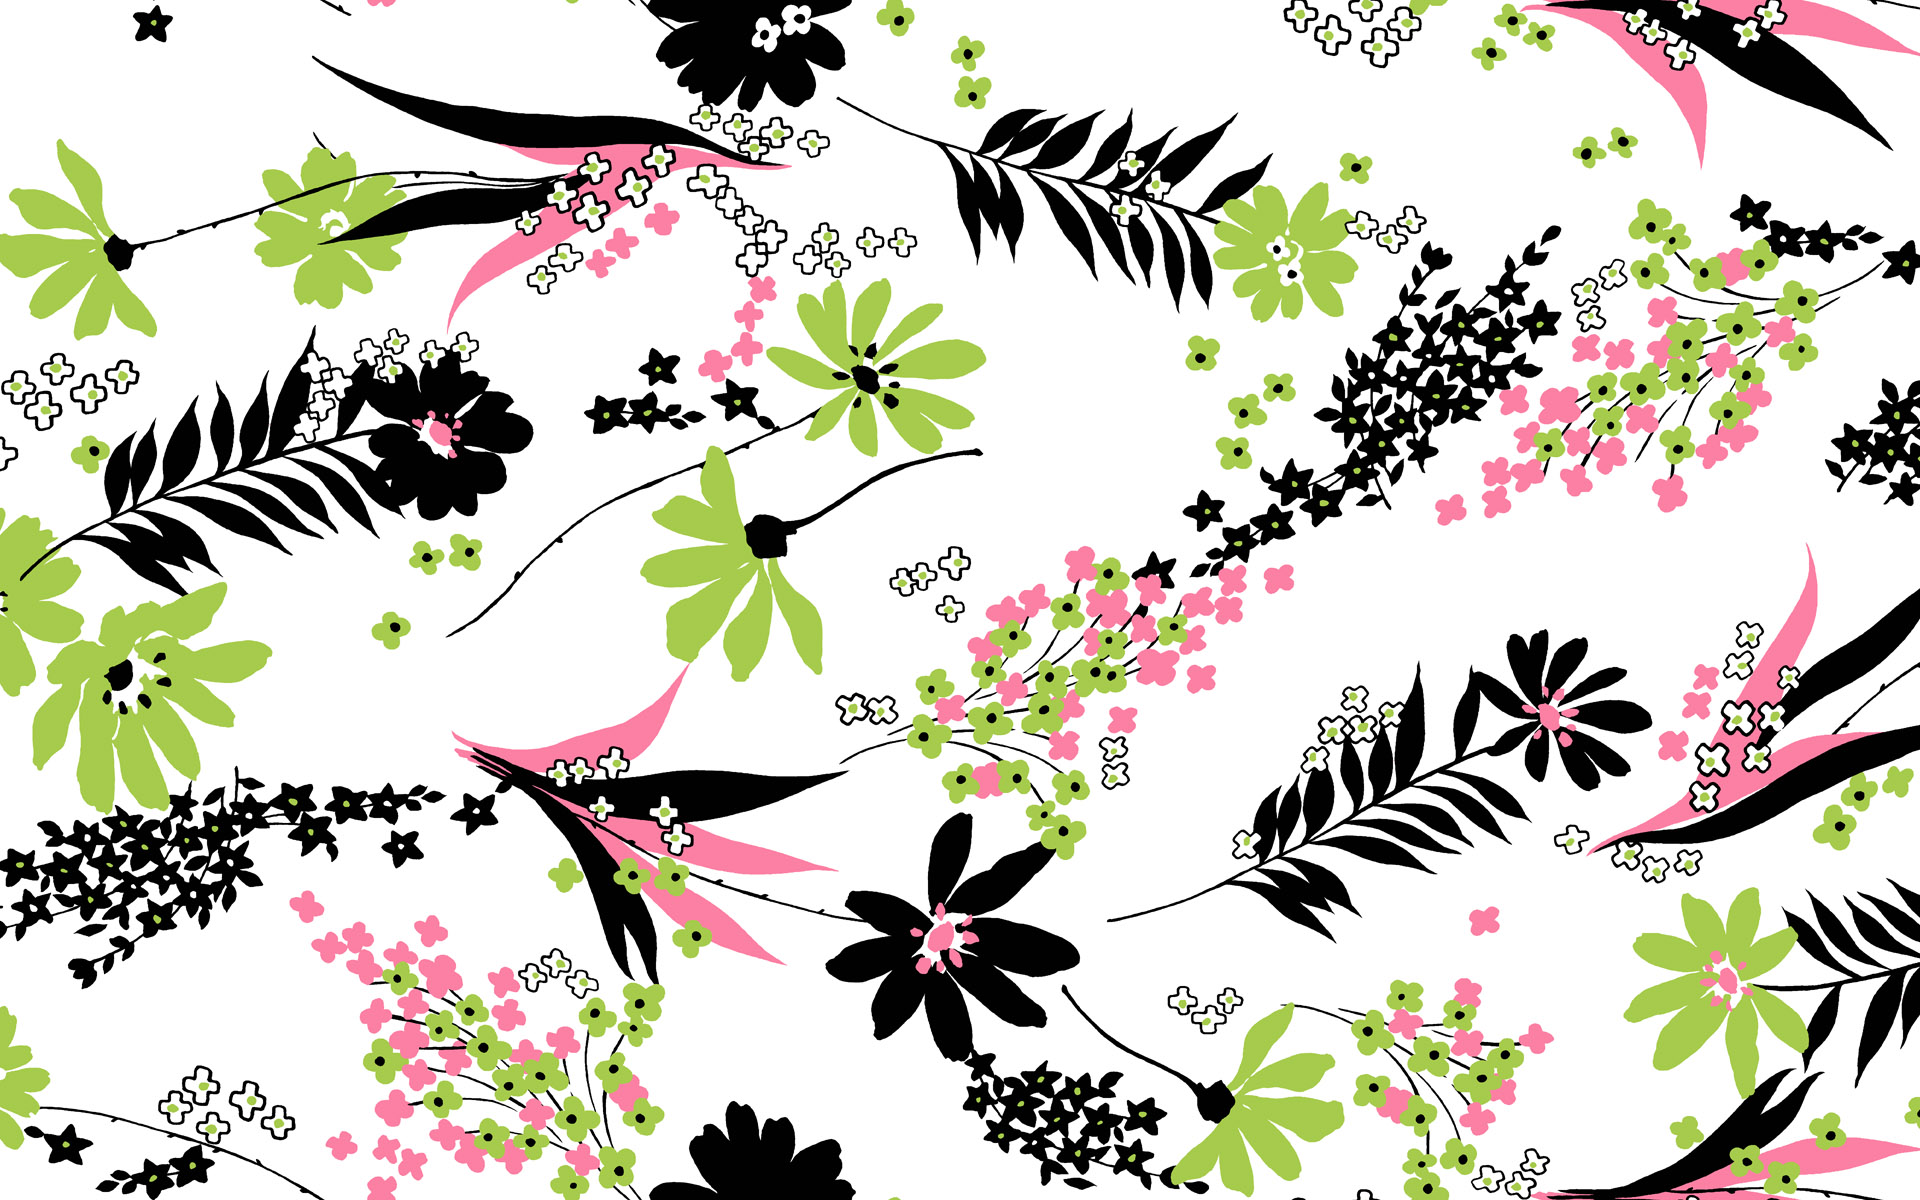 패턴 바탕 화면 배경 무늬,꽃 무늬 디자인,무늬,디자인,식물,꽃